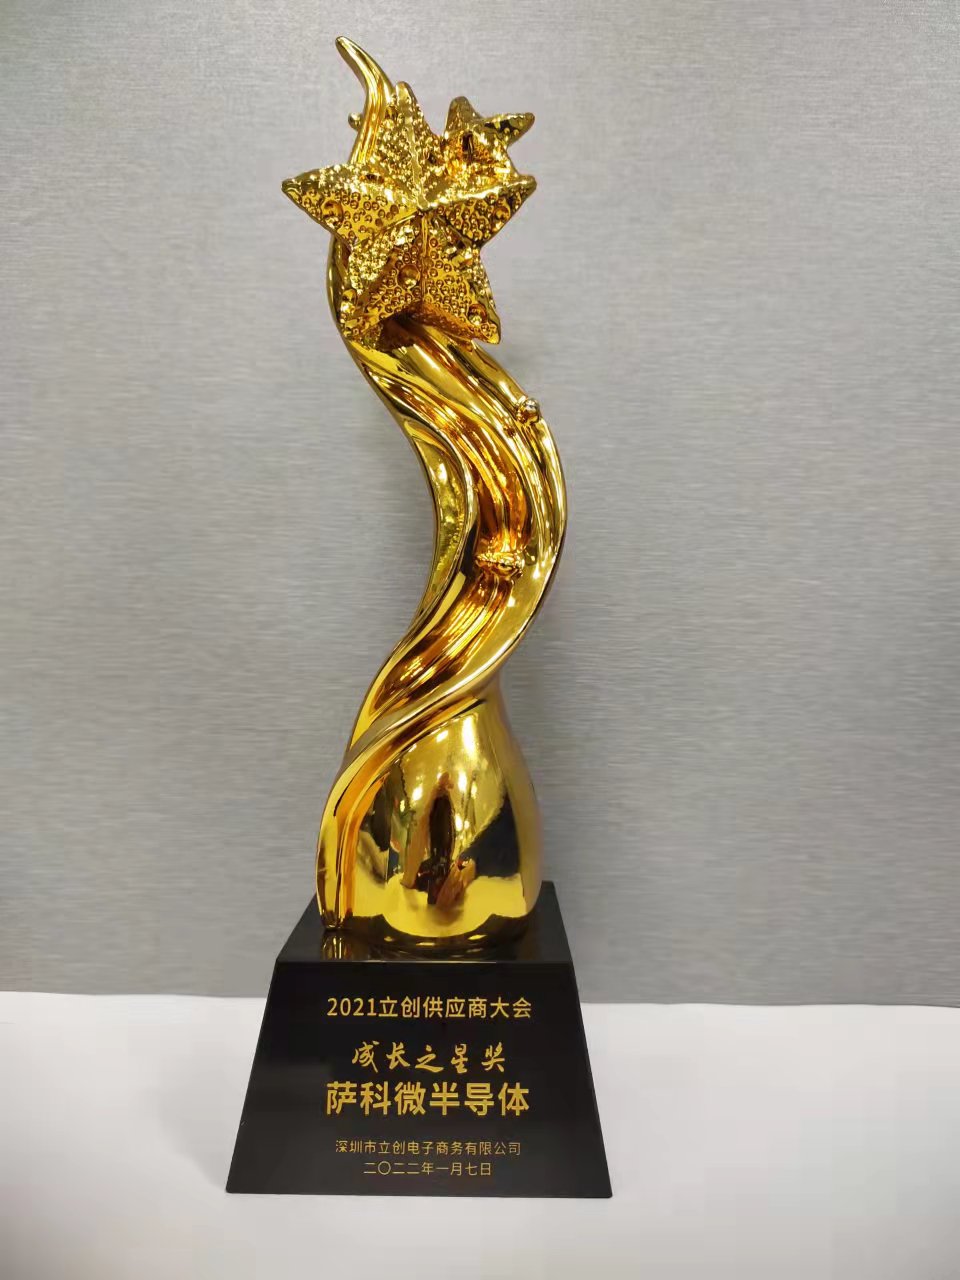 Le « Growing Star Award » de la conférence des fournisseurs de Lichuang 2021